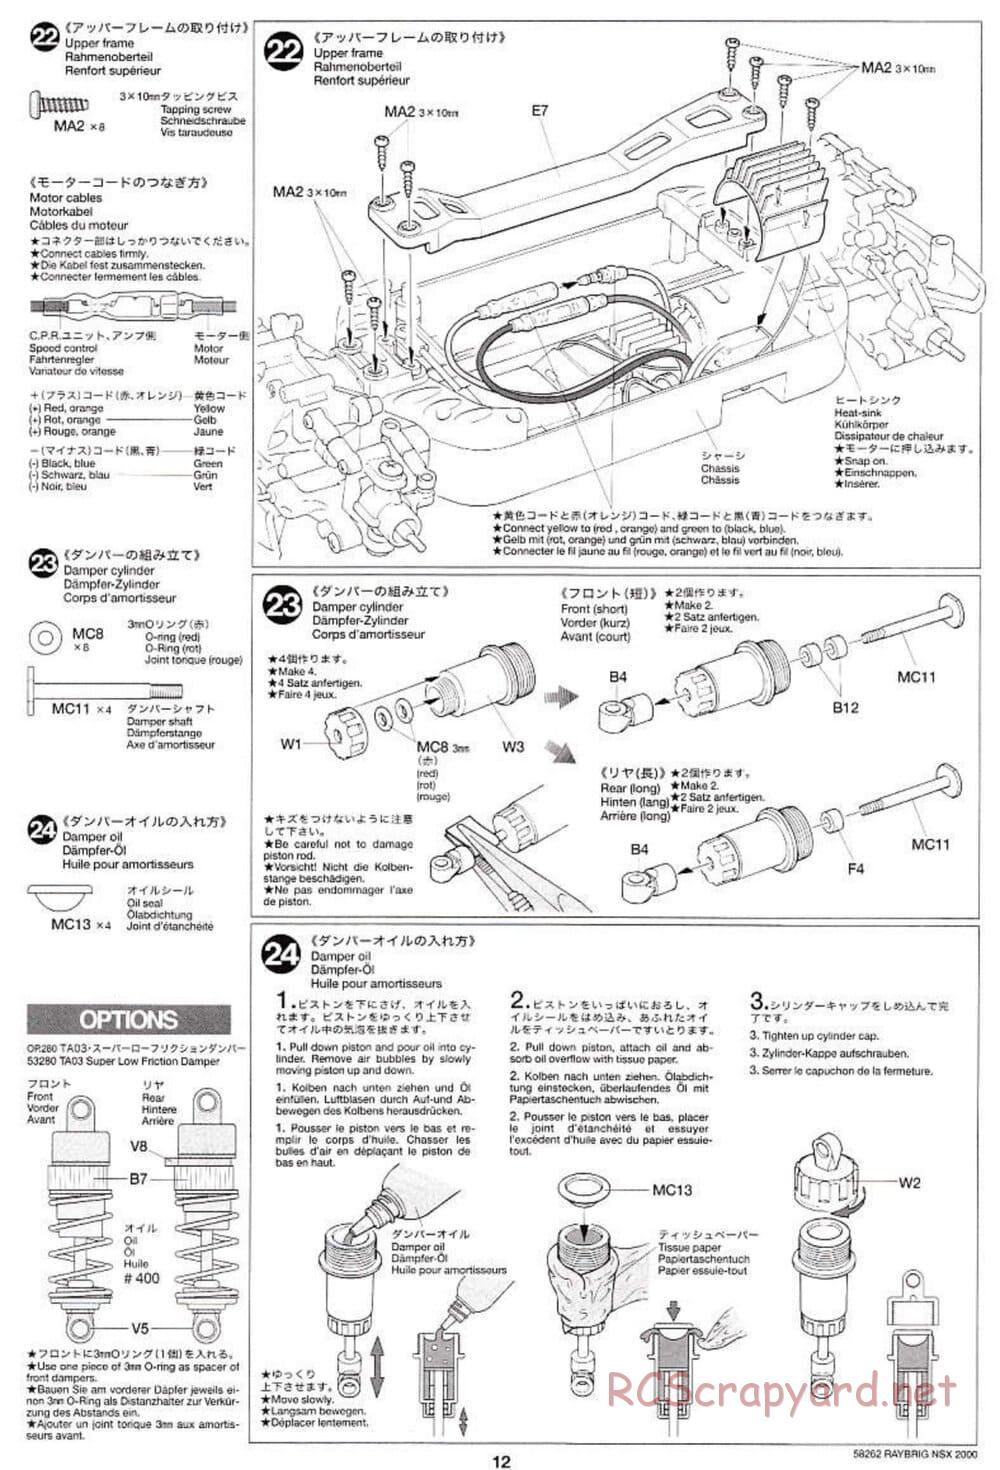 Tamiya - Raybrig NSX 2000 - TB-01 Chassis - Manual - Page 12